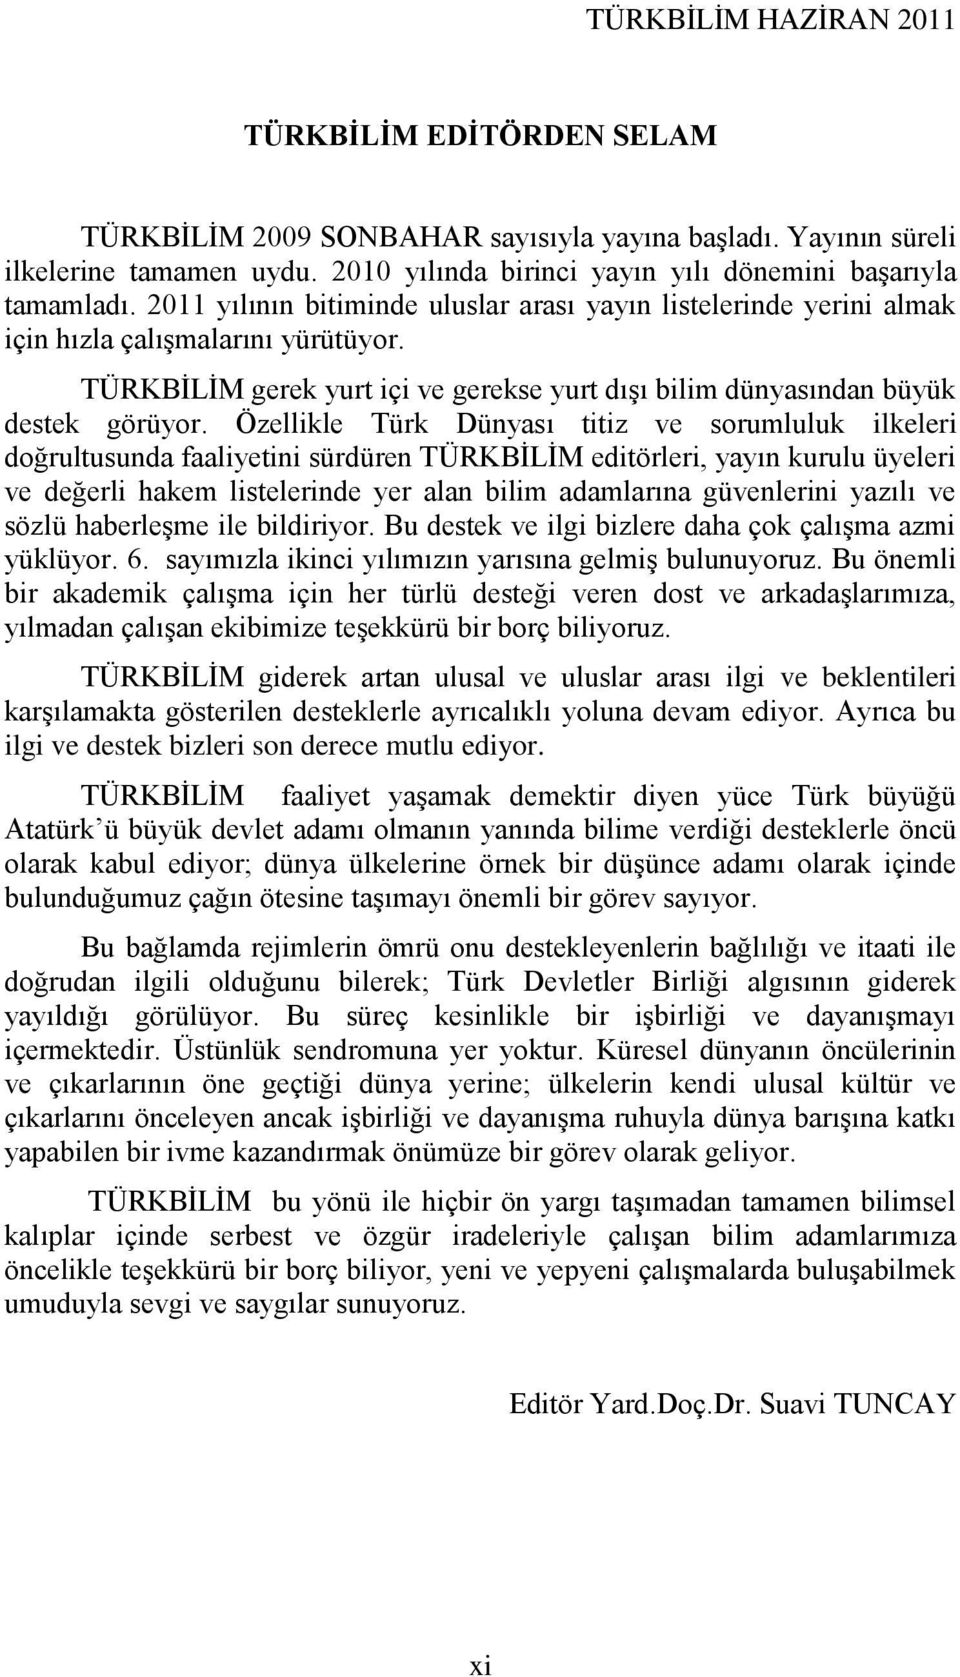 Özellikle Türk Dünyası titiz ve sorumluluk ilkeleri doğrultusunda faaliyetini sürdüren TÜRKBĠLĠM editörleri, yayın kurulu üyeleri ve değerli hakem listelerinde yer alan bilim adamlarına güvenlerini